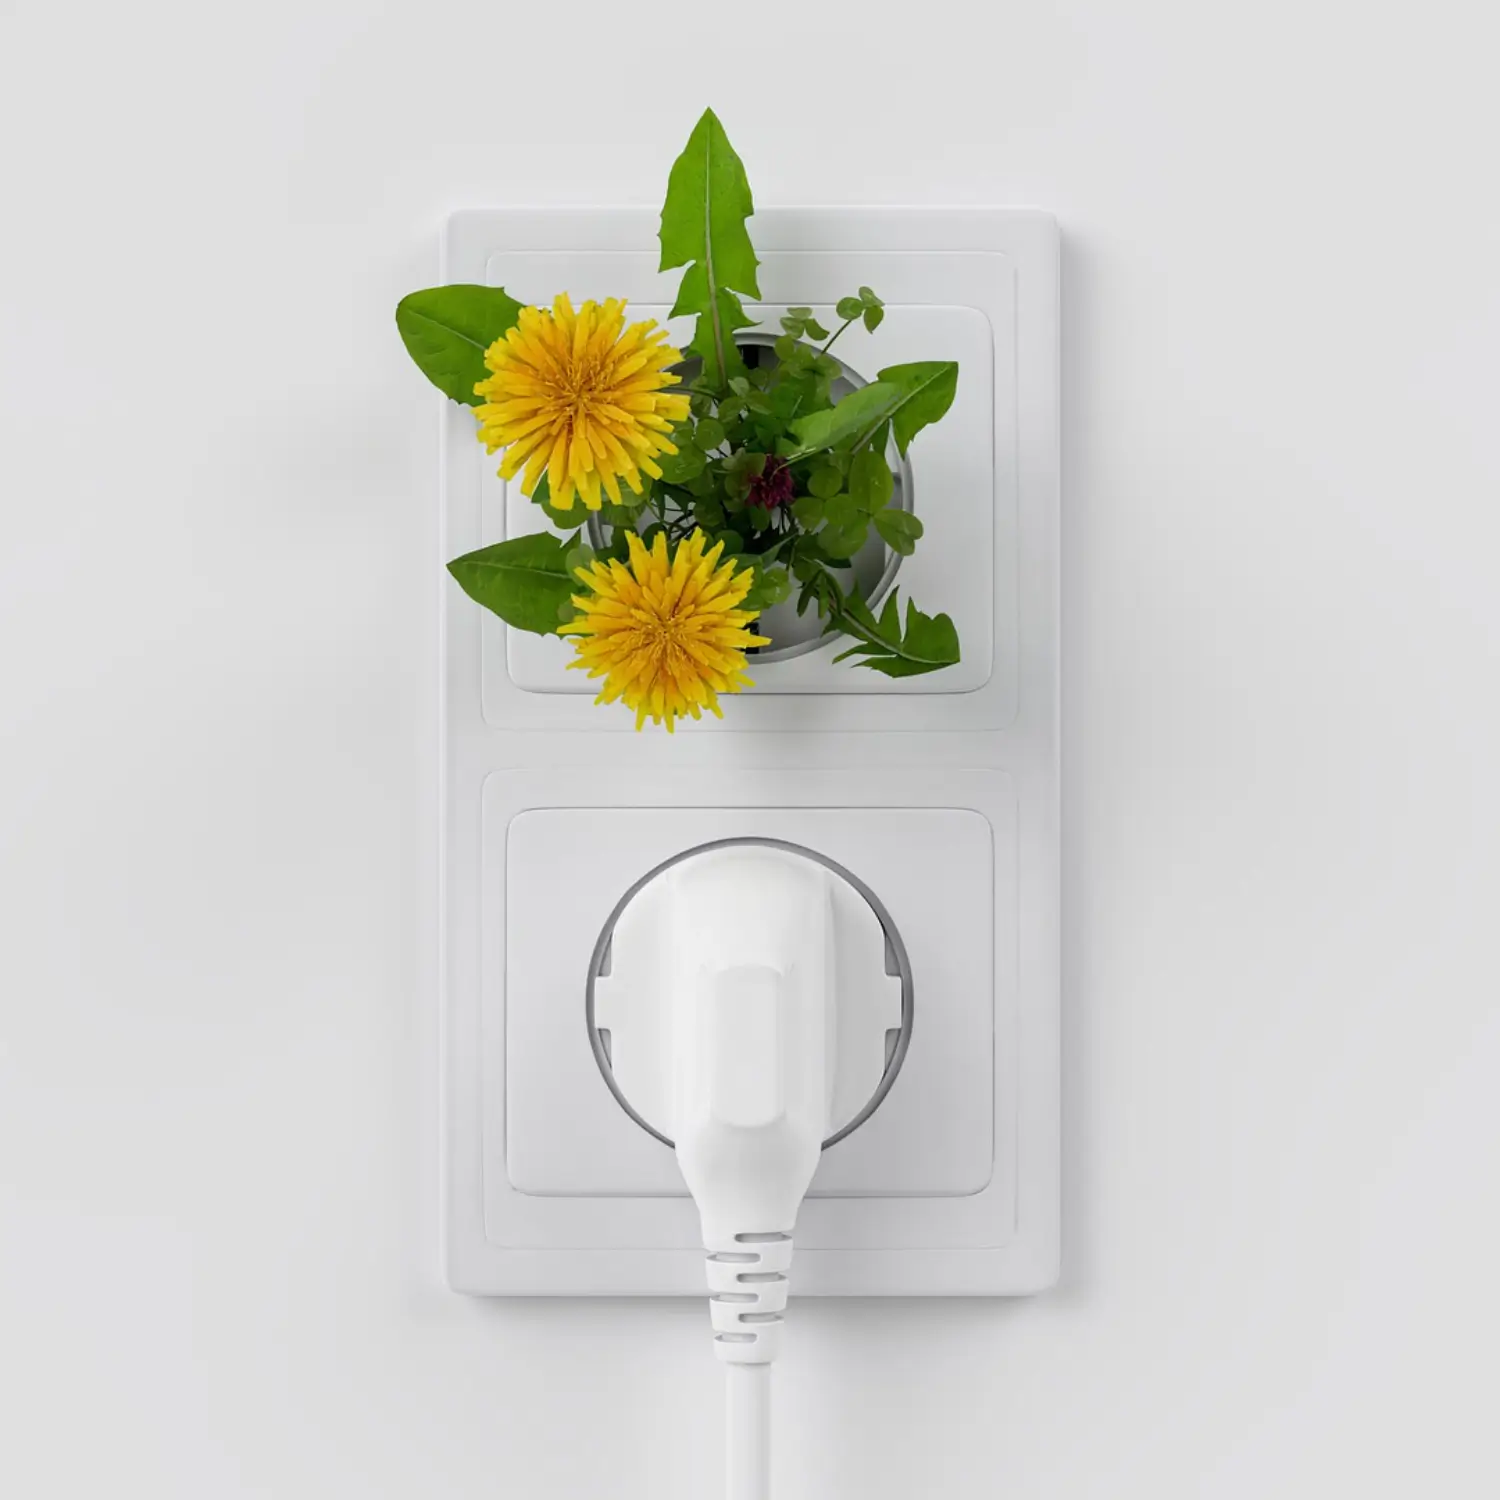 Das Bild zeigt eine weiße Doppelsteckdose in einer weißen Wand. An der einen Steckdose ist ein Kabel mit Stecker angeschlossen, aus der zweiten Steckdose wächst scheinbar ein Löwenzahn mit gelben Blüten und grünen Blättern.